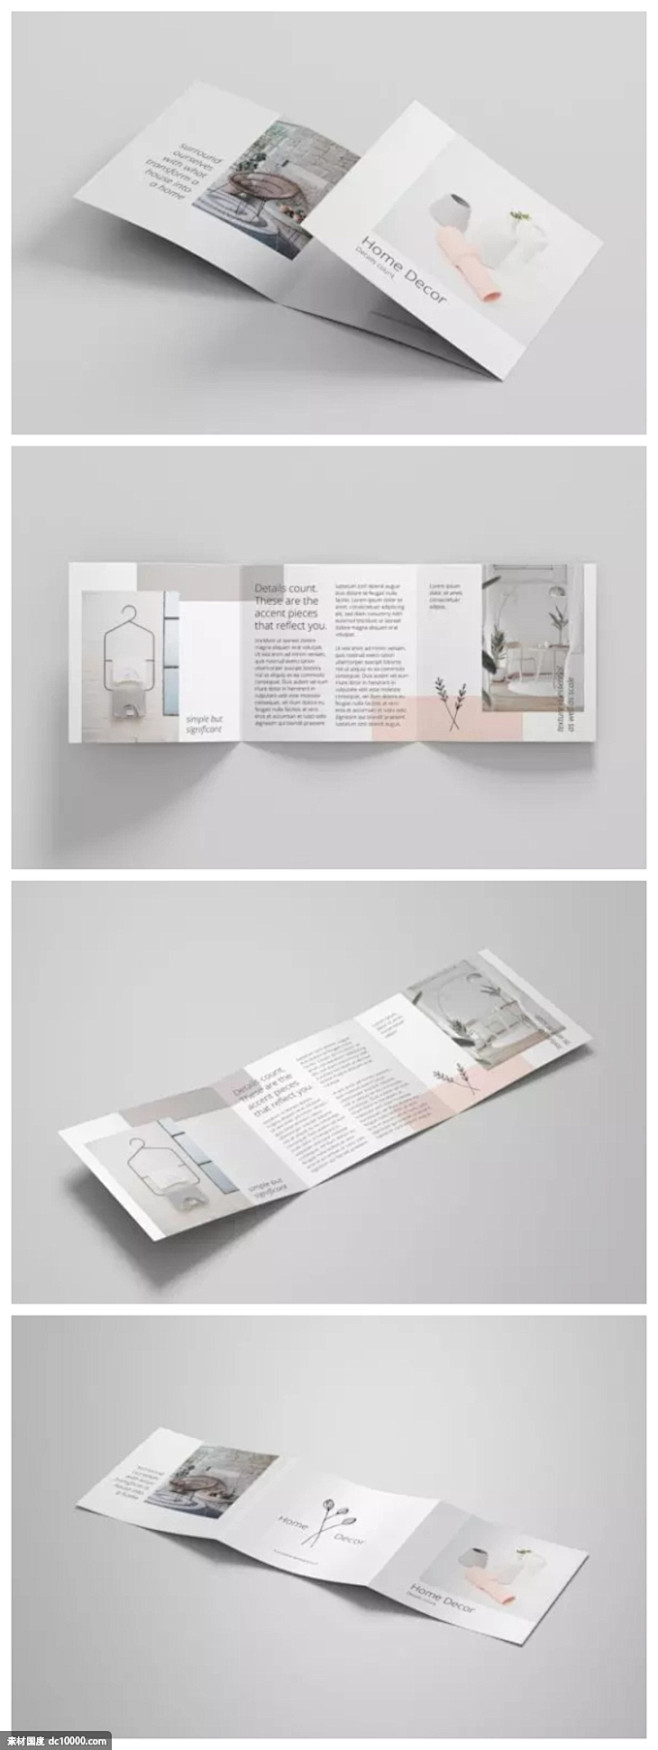 极简设计风格三折页方形宣传册模板